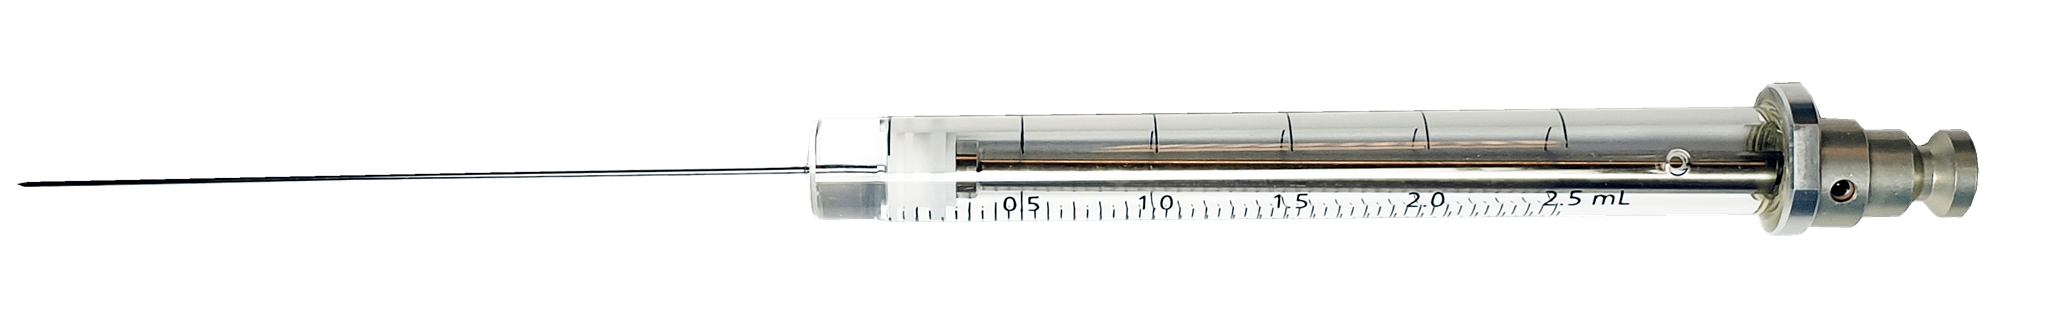 Obrázek HS Syringe; 2.5 ml; gas tight; fixed needle;23G;65mm needle length;side hole dome